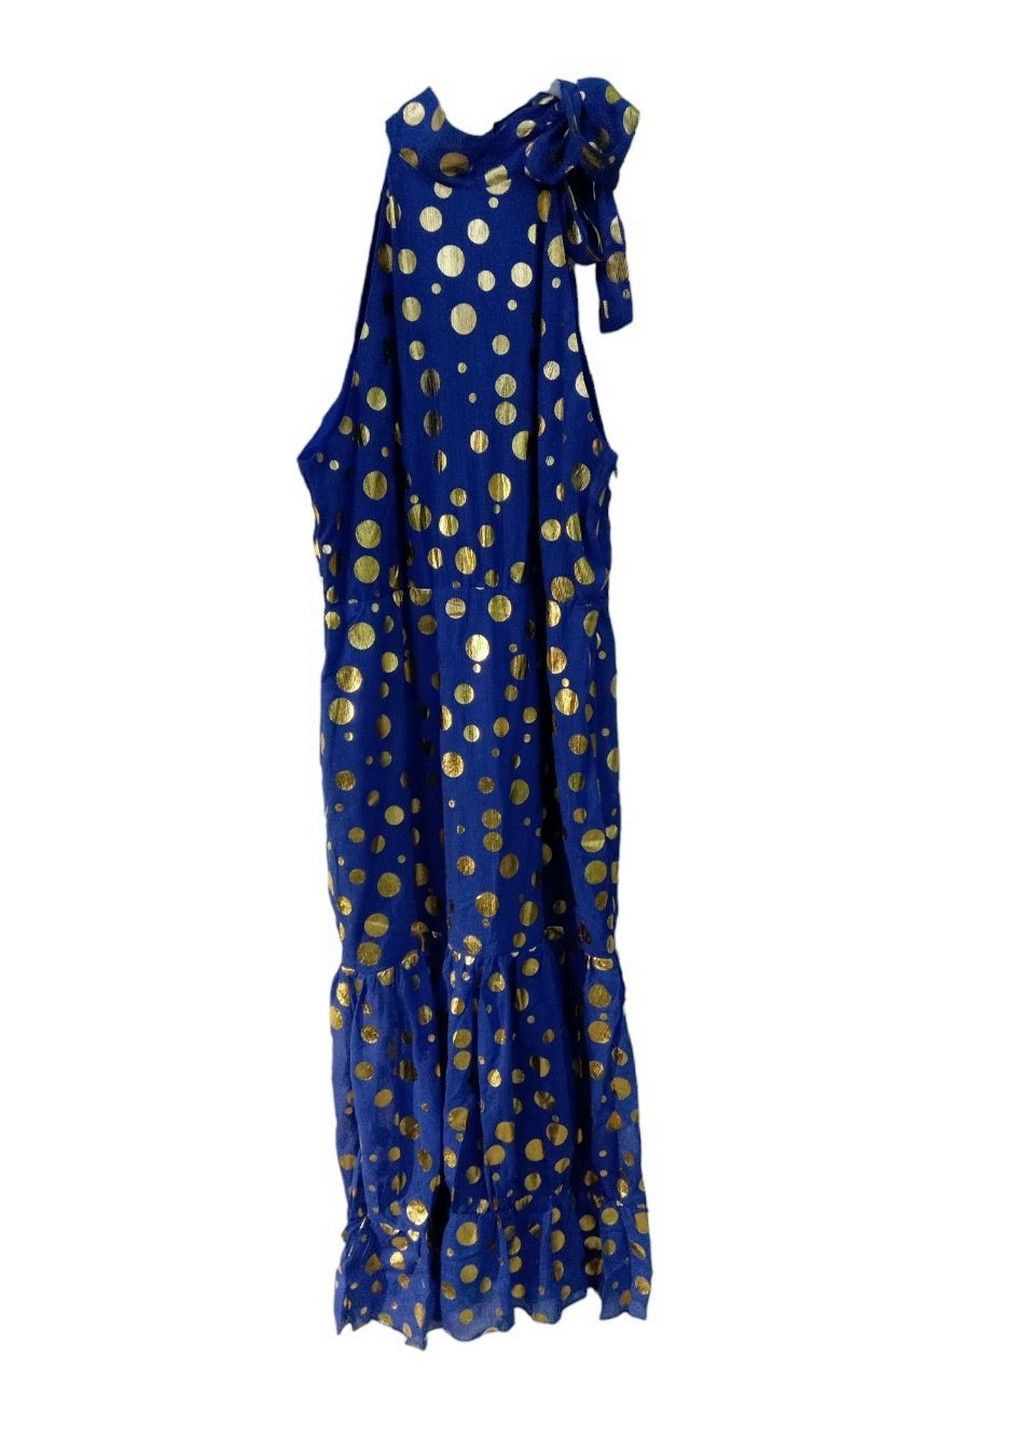 Синее коктейльное платье с микро-дефектом Boohoo в горошек